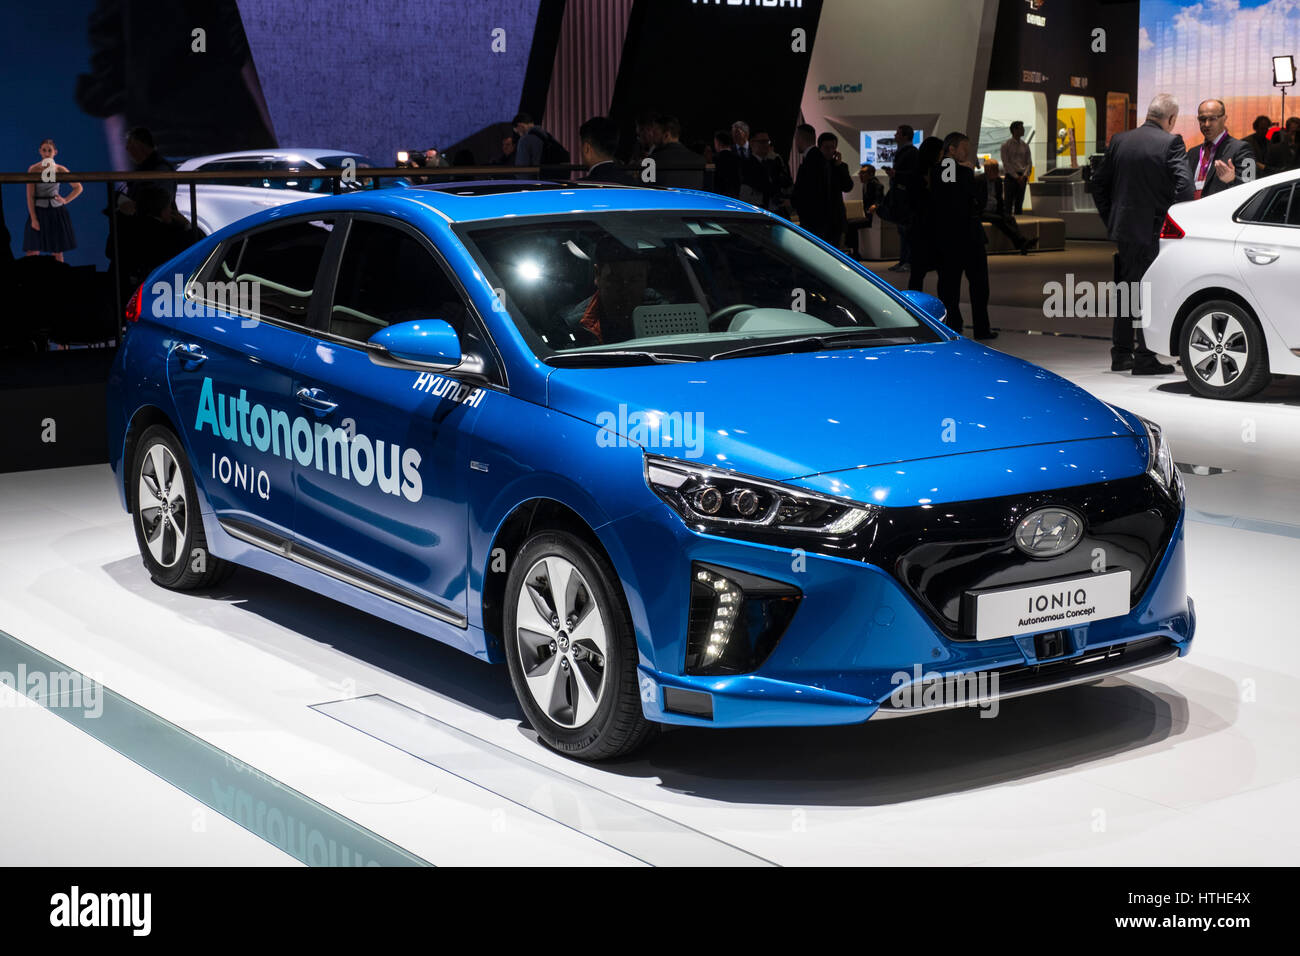 Hyundai Ioniq conducción autónoma en concepto de vehículo 87 Motor Show Internacional de Ginebra en Ginebra, Suiza 2017 Foto de stock